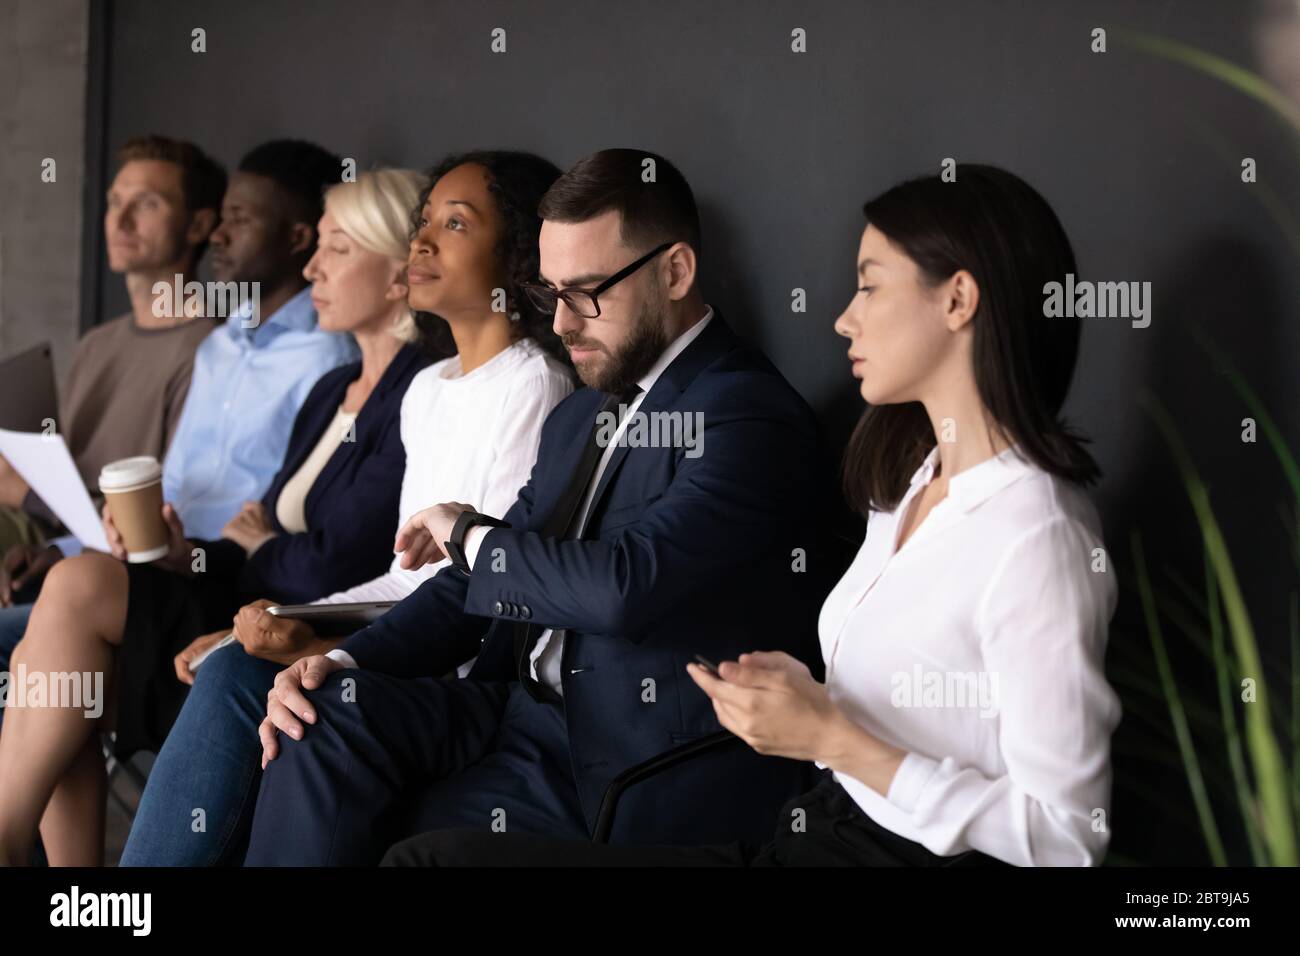 Divers candidats en attente d'un entretien d'embauche, assis en rangée Banque D'Images